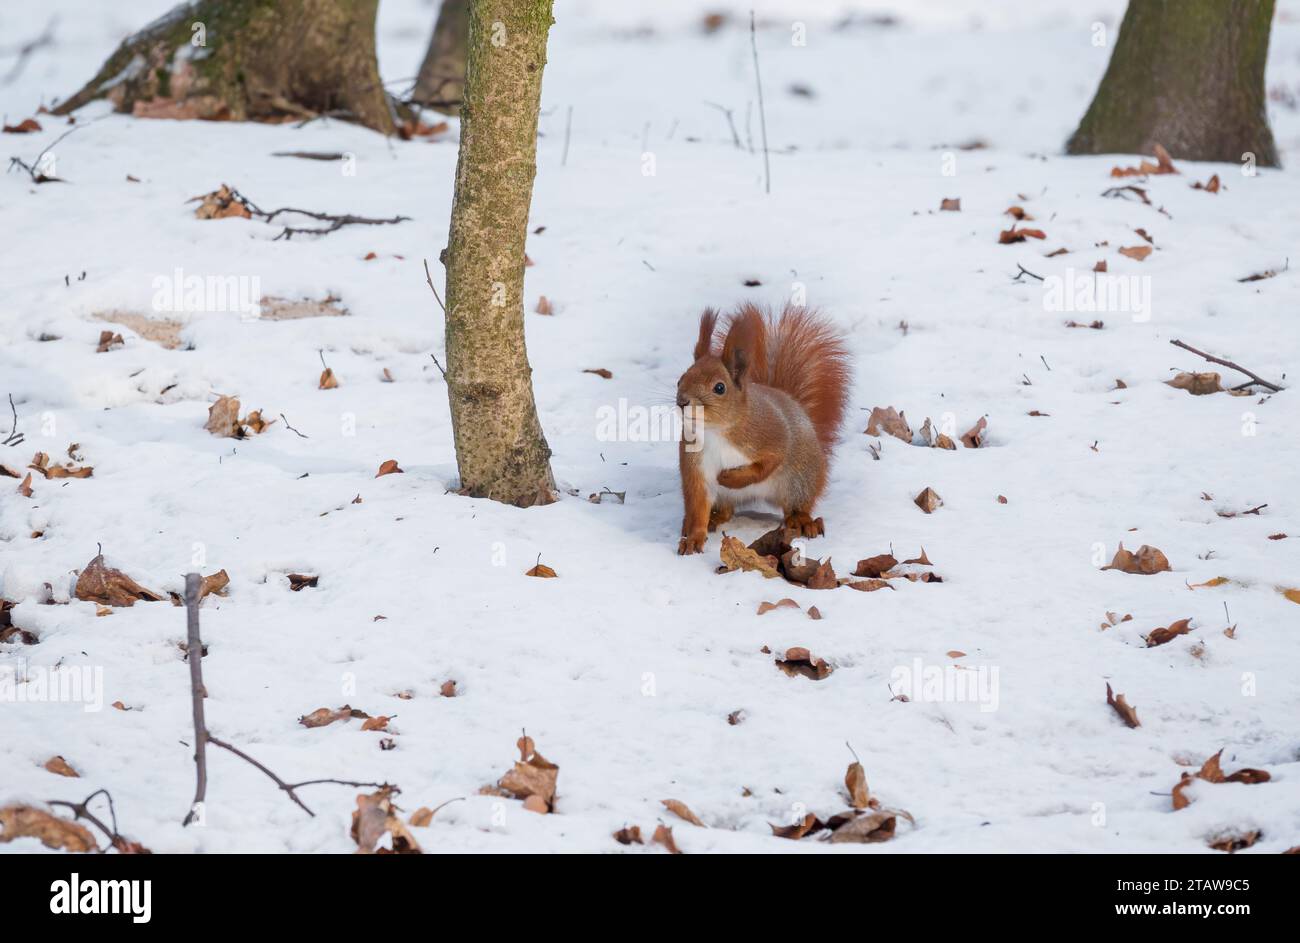 Écureuil roux sur la neige dans le parc. Petits animaux survivants en hiver Banque D'Images